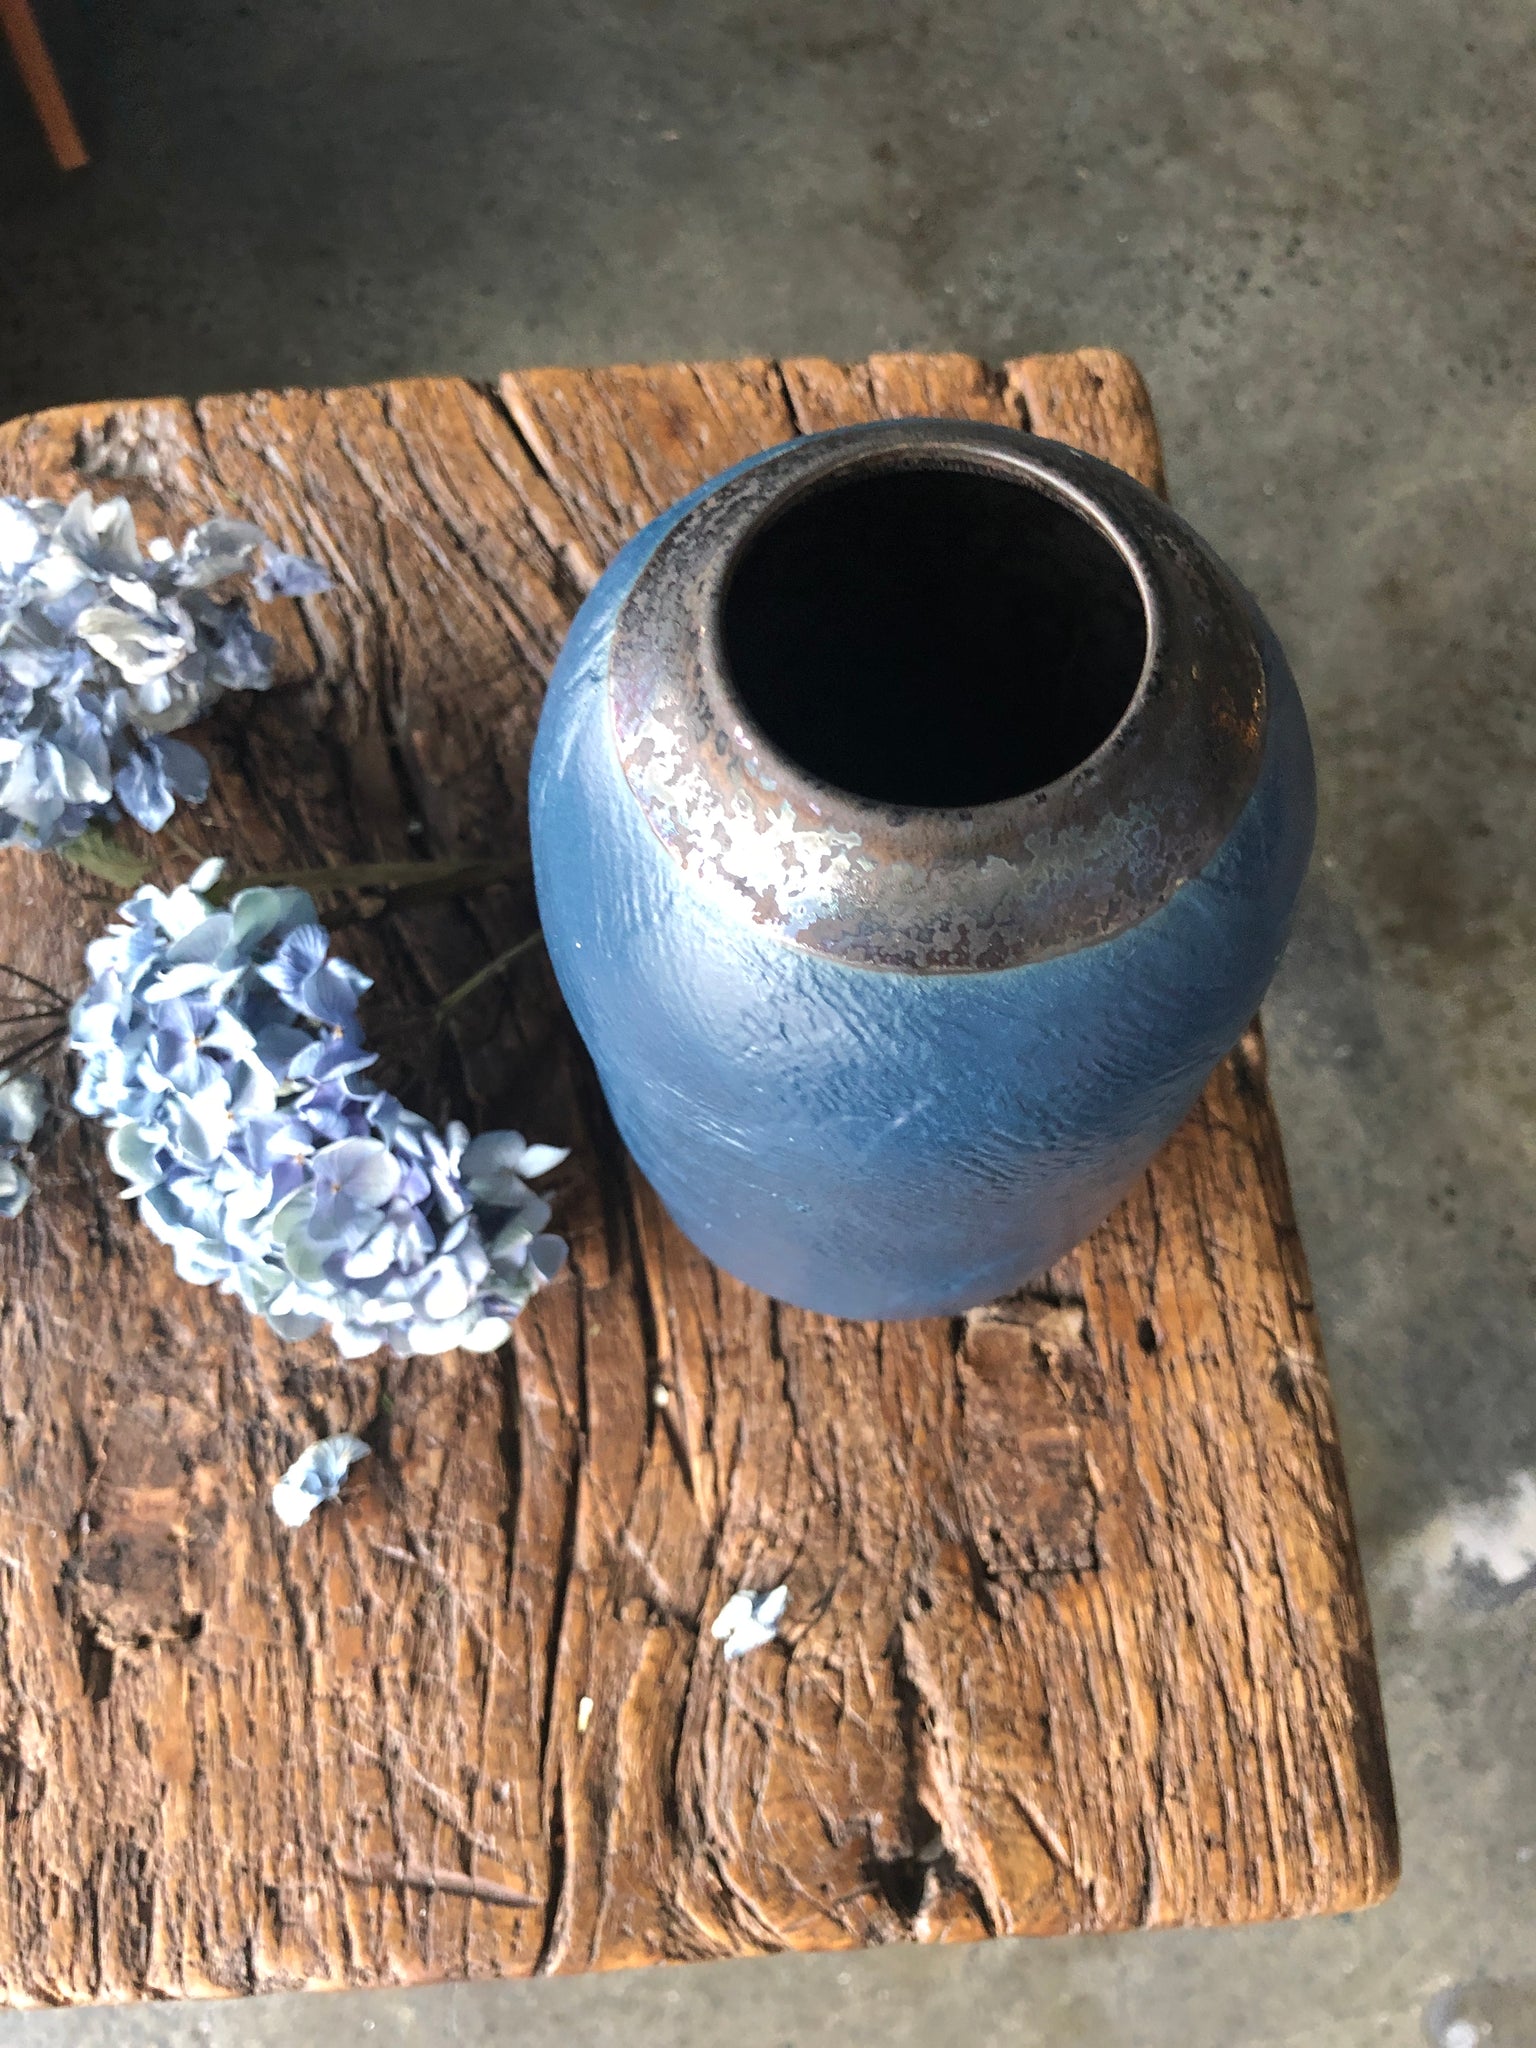 Sapphire Vase